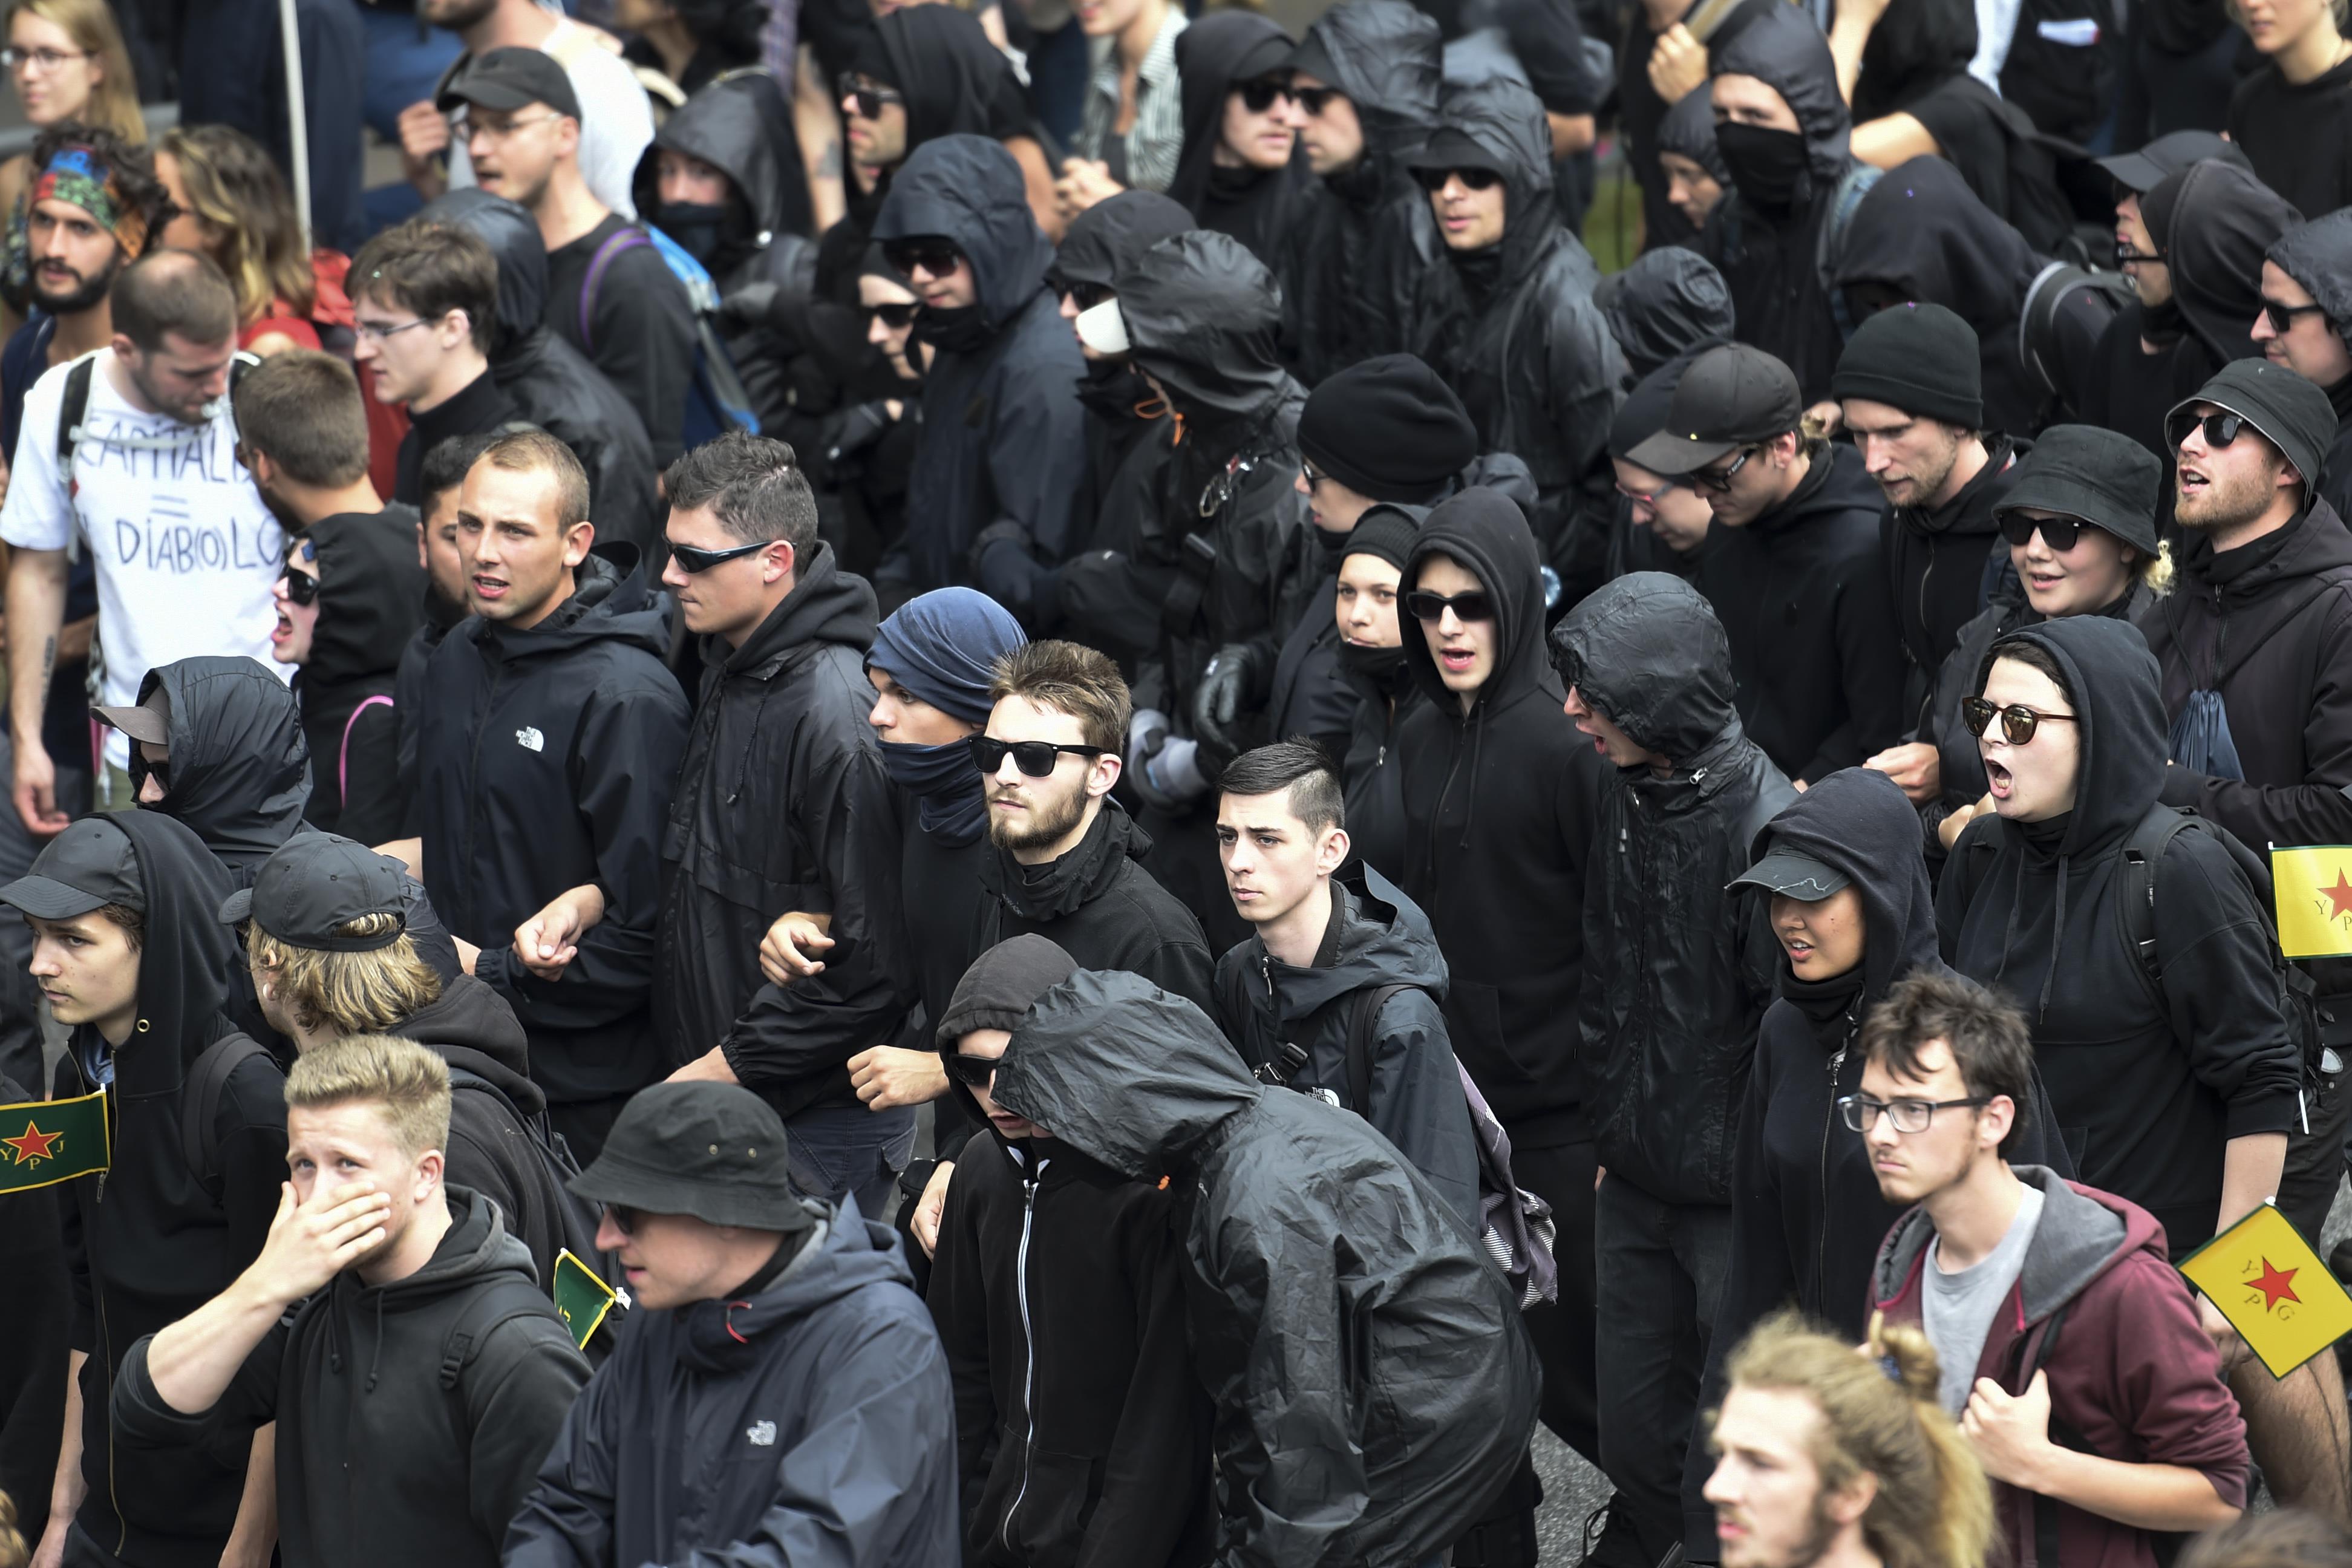 متظاهرون يرتدون ملابس سوداء خلال مسيرة بهامبورج